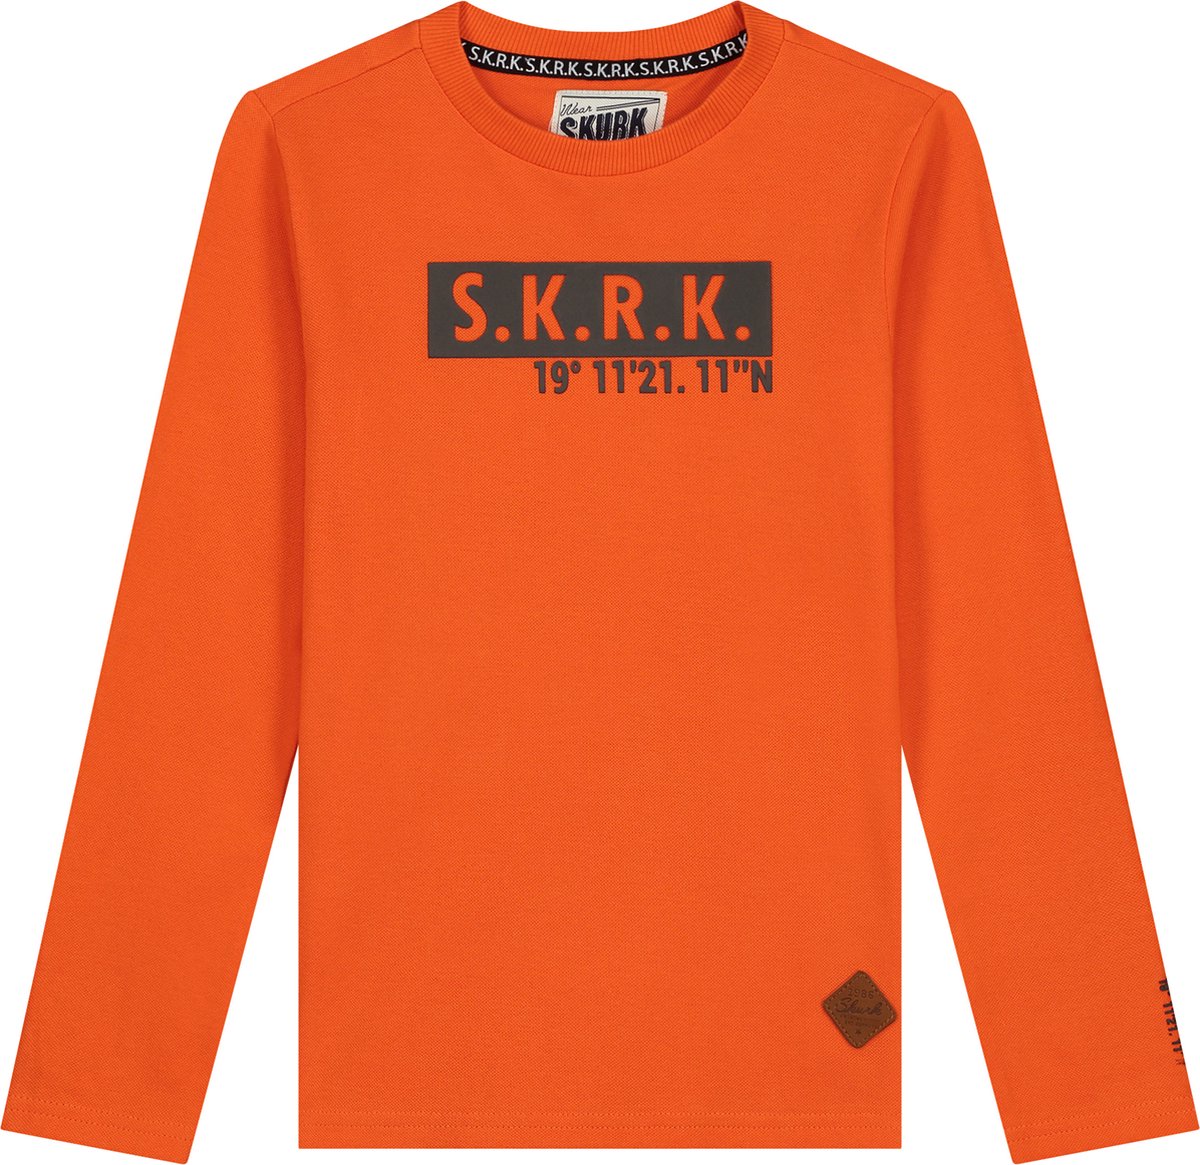 SKURK Leroy Kinder Jongens T-shirt Lange Mouw - Maat 152